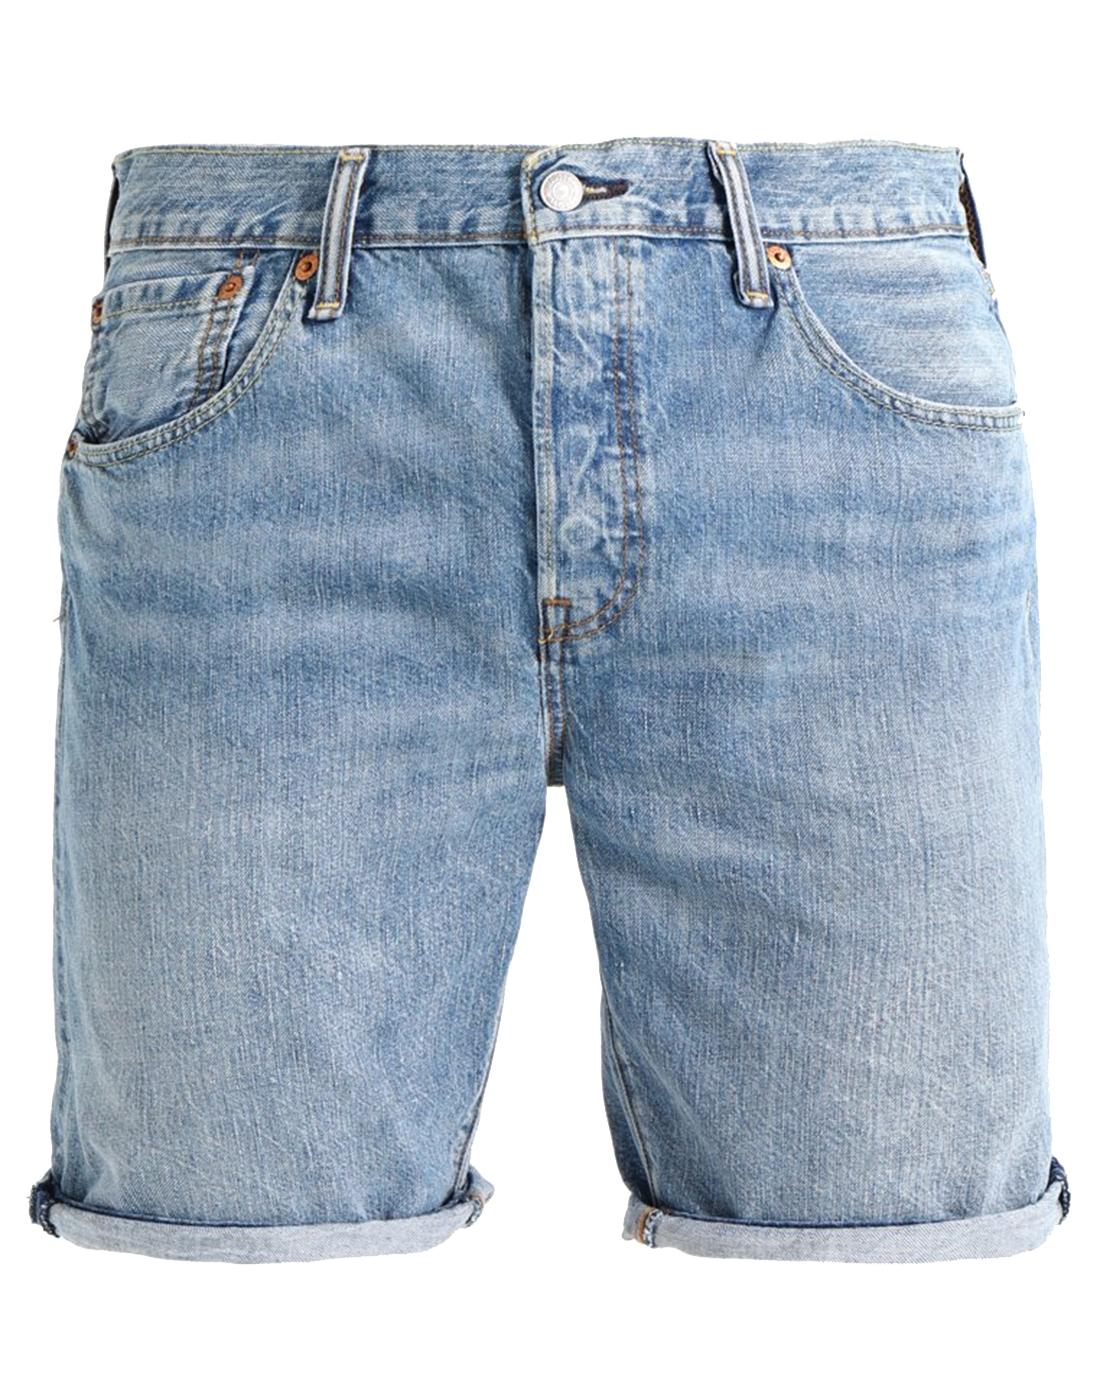 LEVI'S® 501 Men's Hemmed Denim Shorts LIVIN EASY